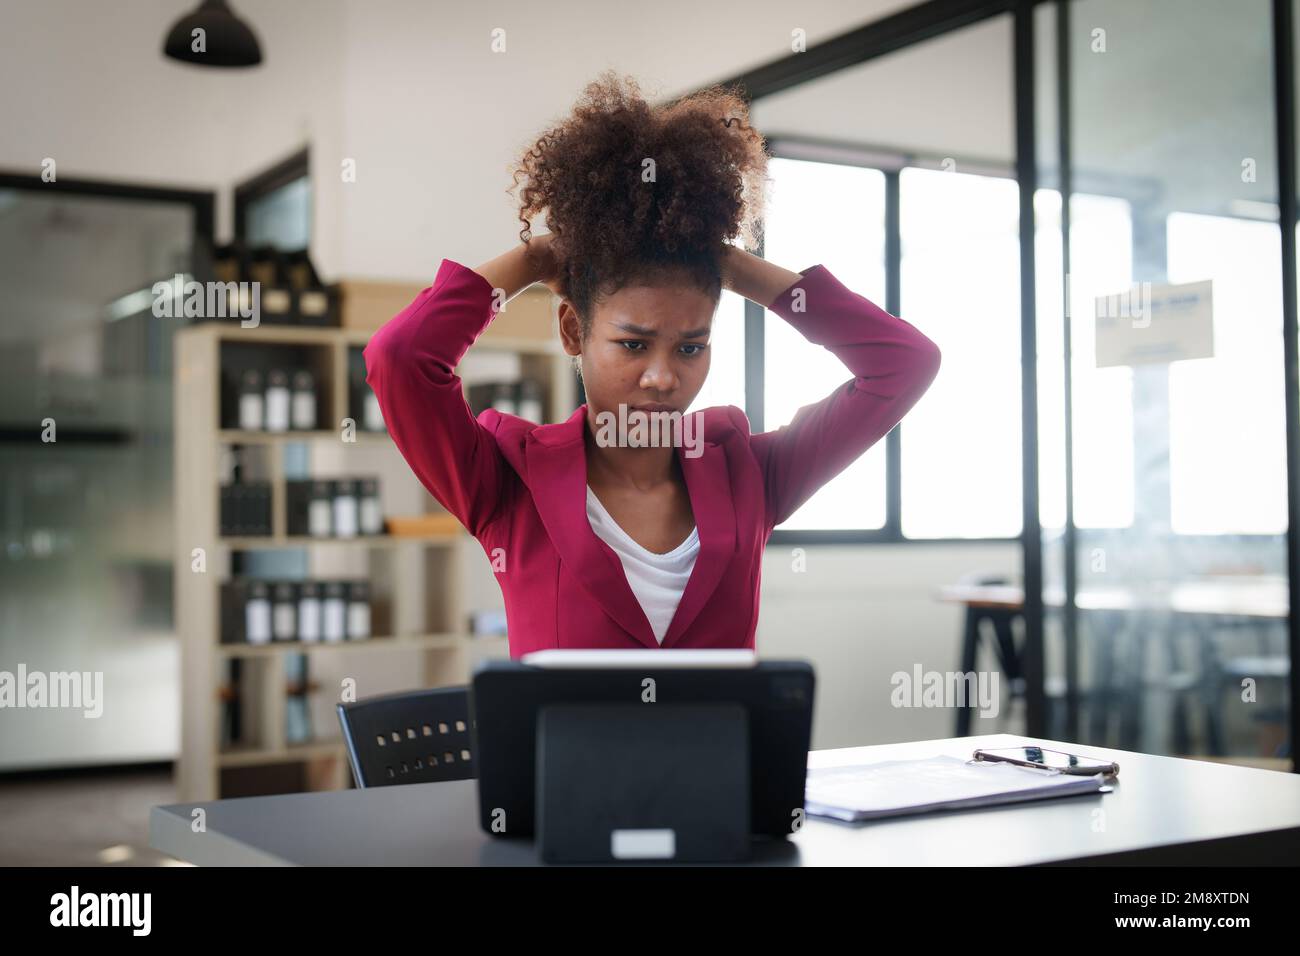 Portrait réfléchi jeune femme d'affaires afro-américaine confuse regardant un ordinateur portable. Stress lors de la lecture de nouvelles, de rapports ou d'e-mails. Problème en ligne Banque D'Images